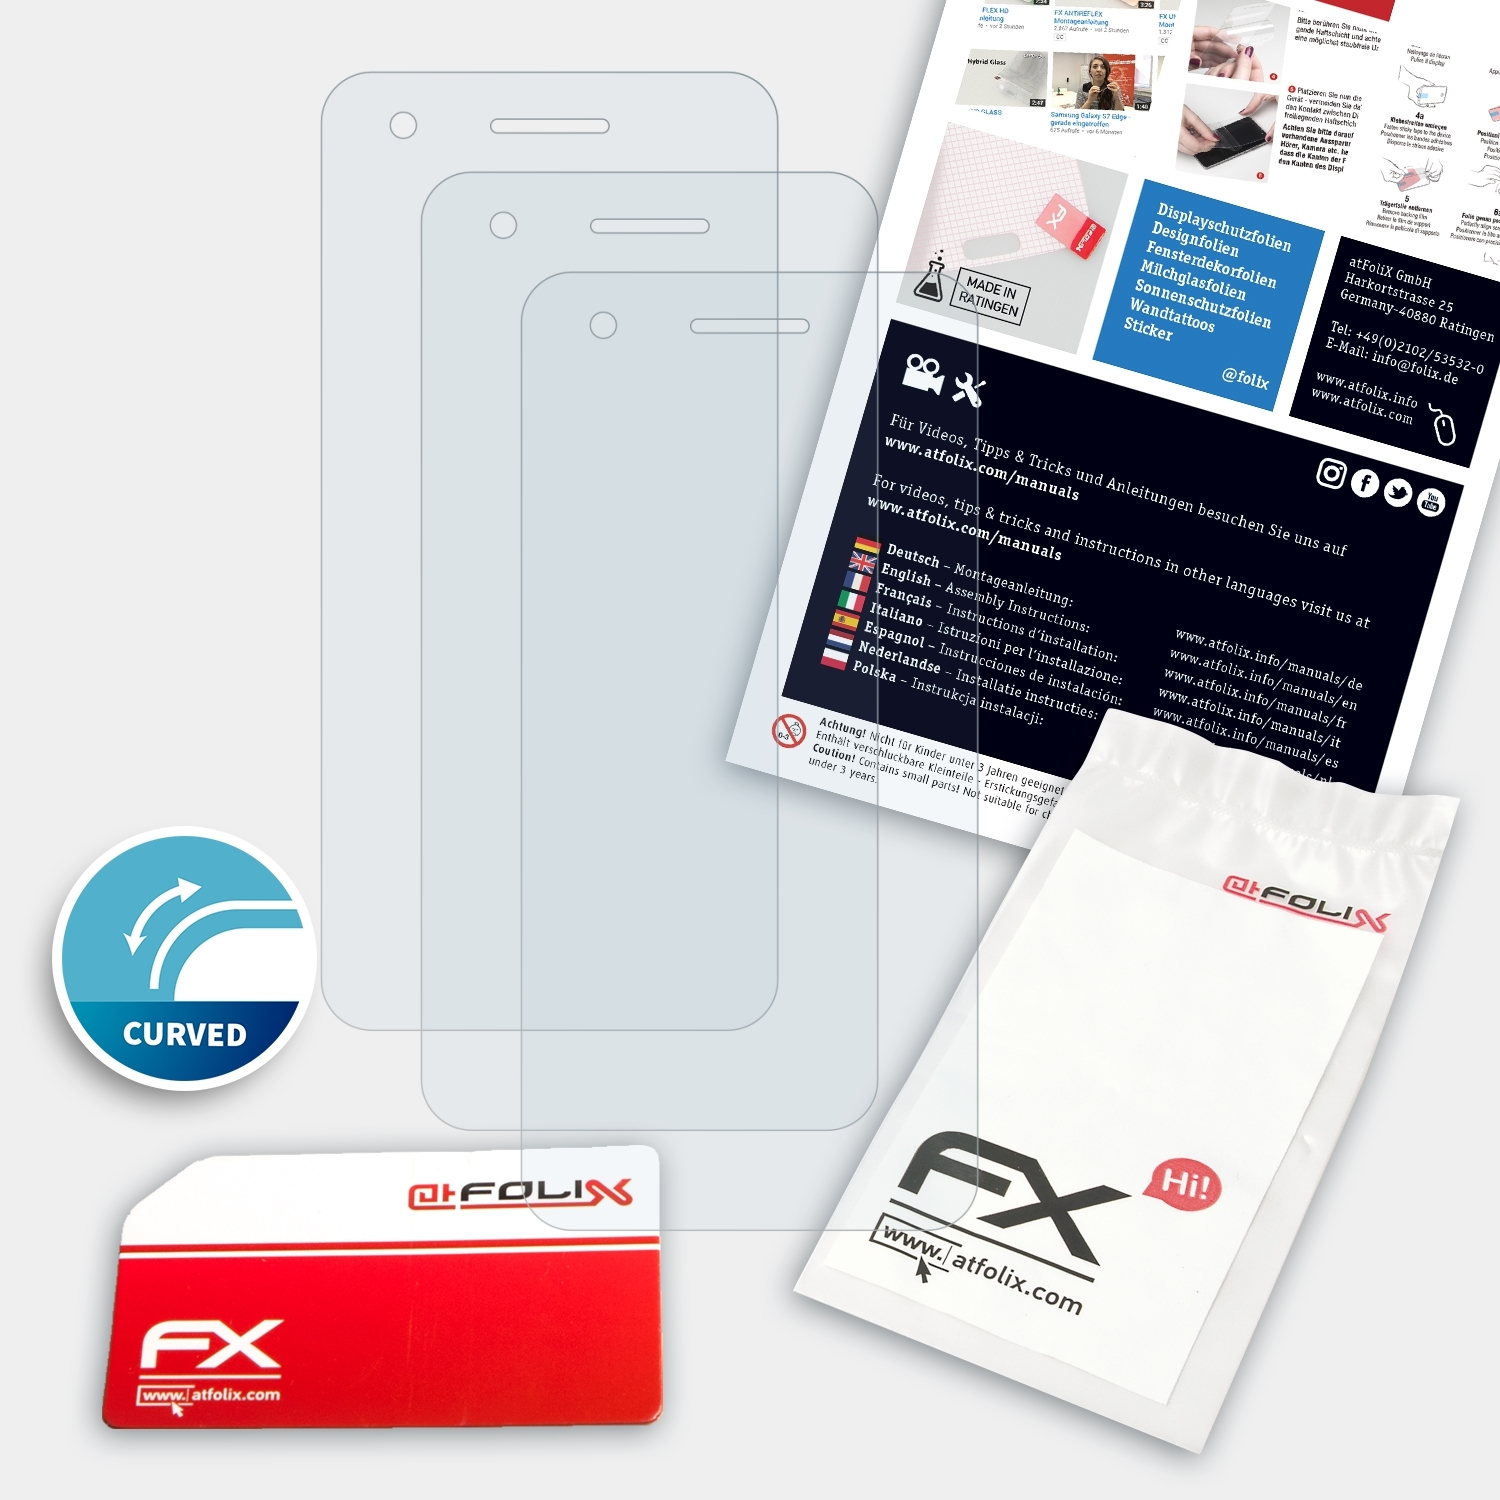 Displayschutz(für ATFOLIX 3x Vodafone FX-ActiFleX V8) Smart